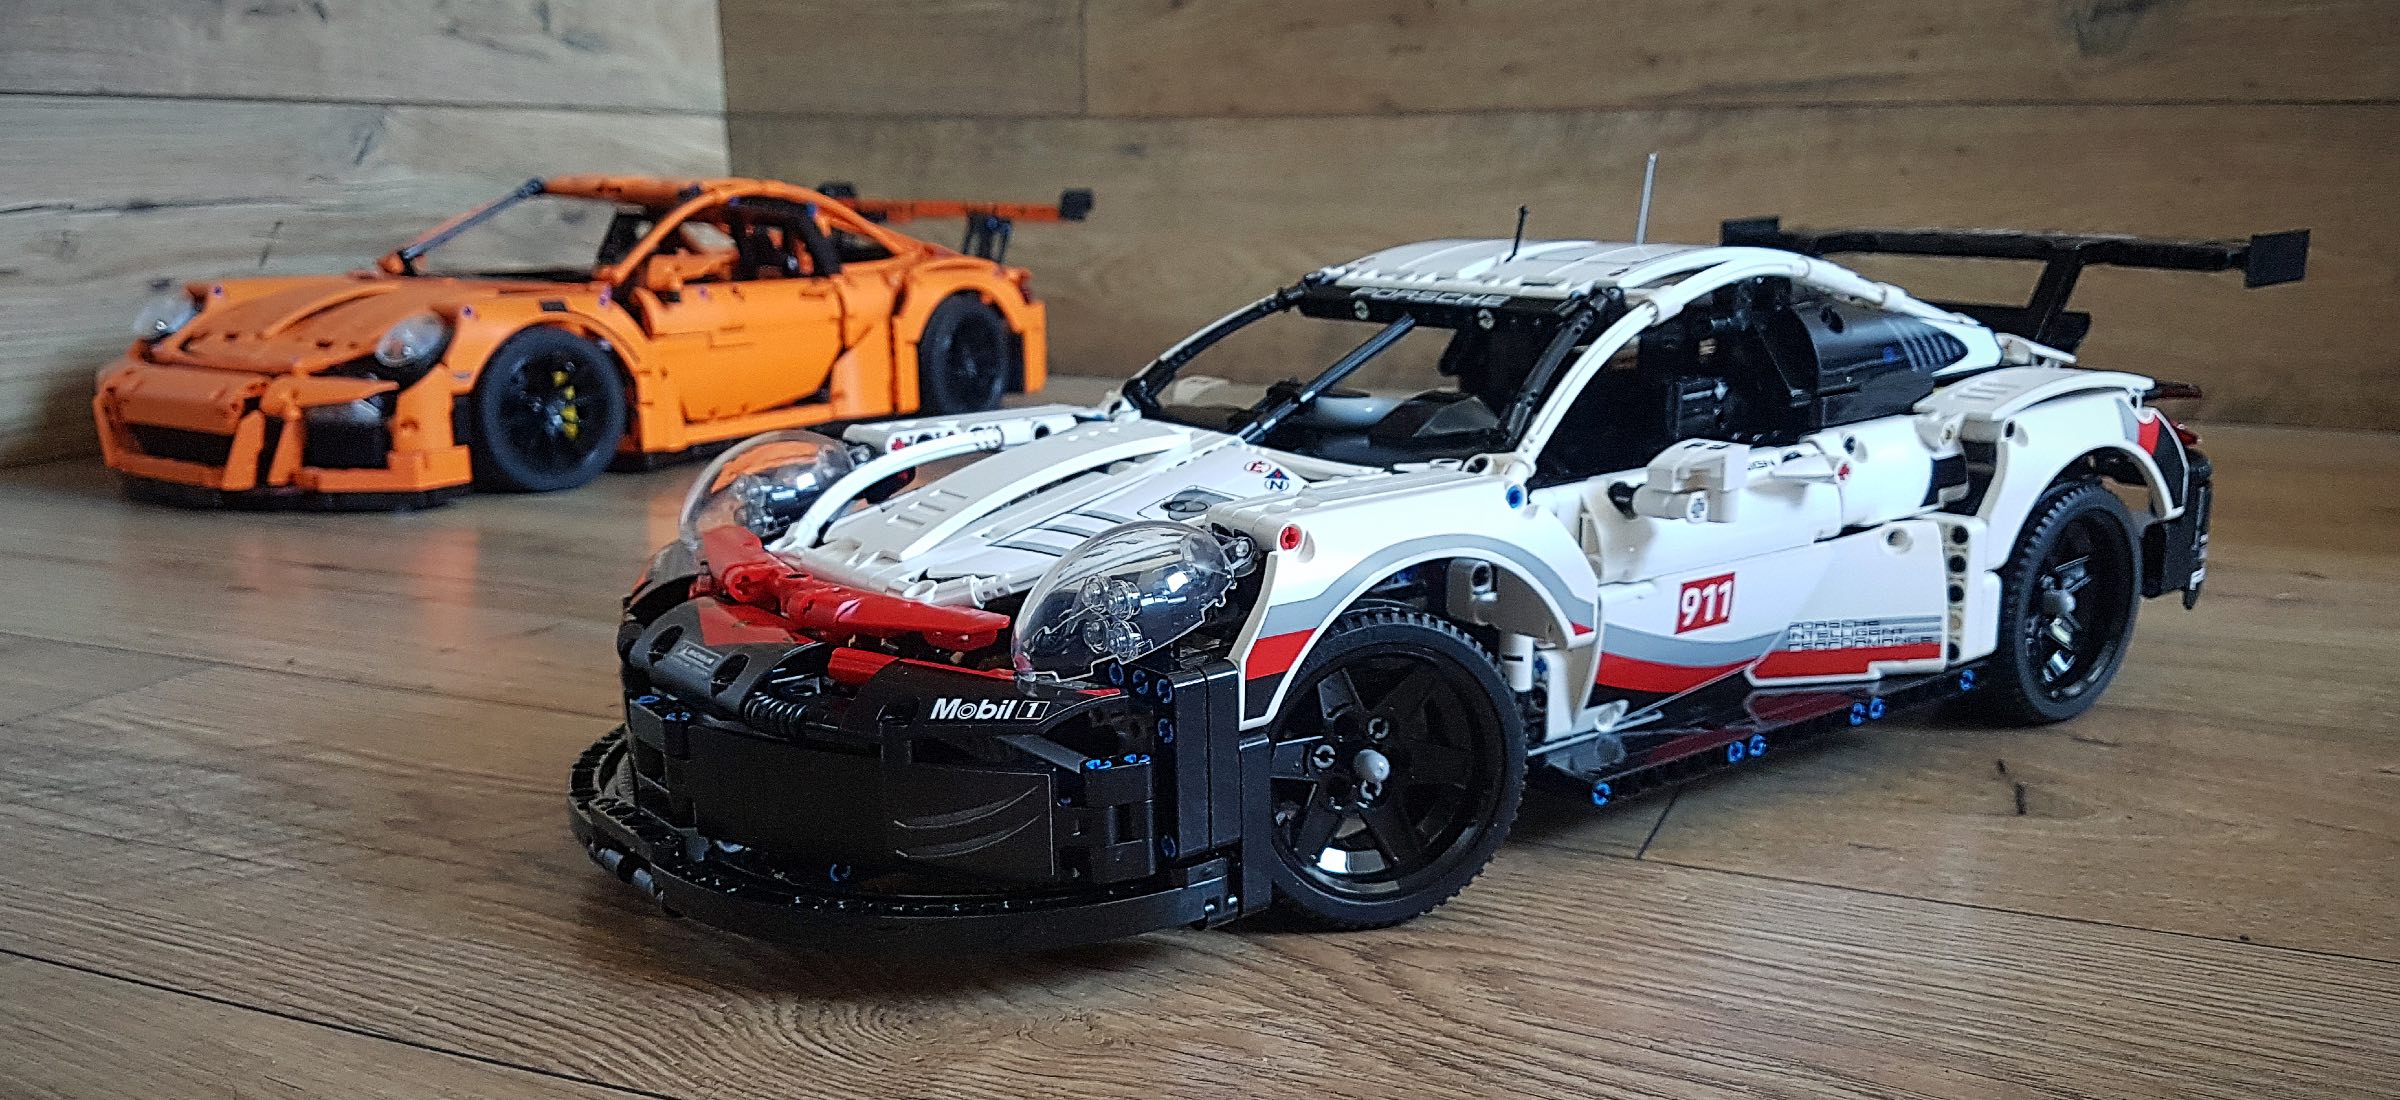 Lego 42096 Porsche 911 RSR - recenzja, detale, plusy i minusy